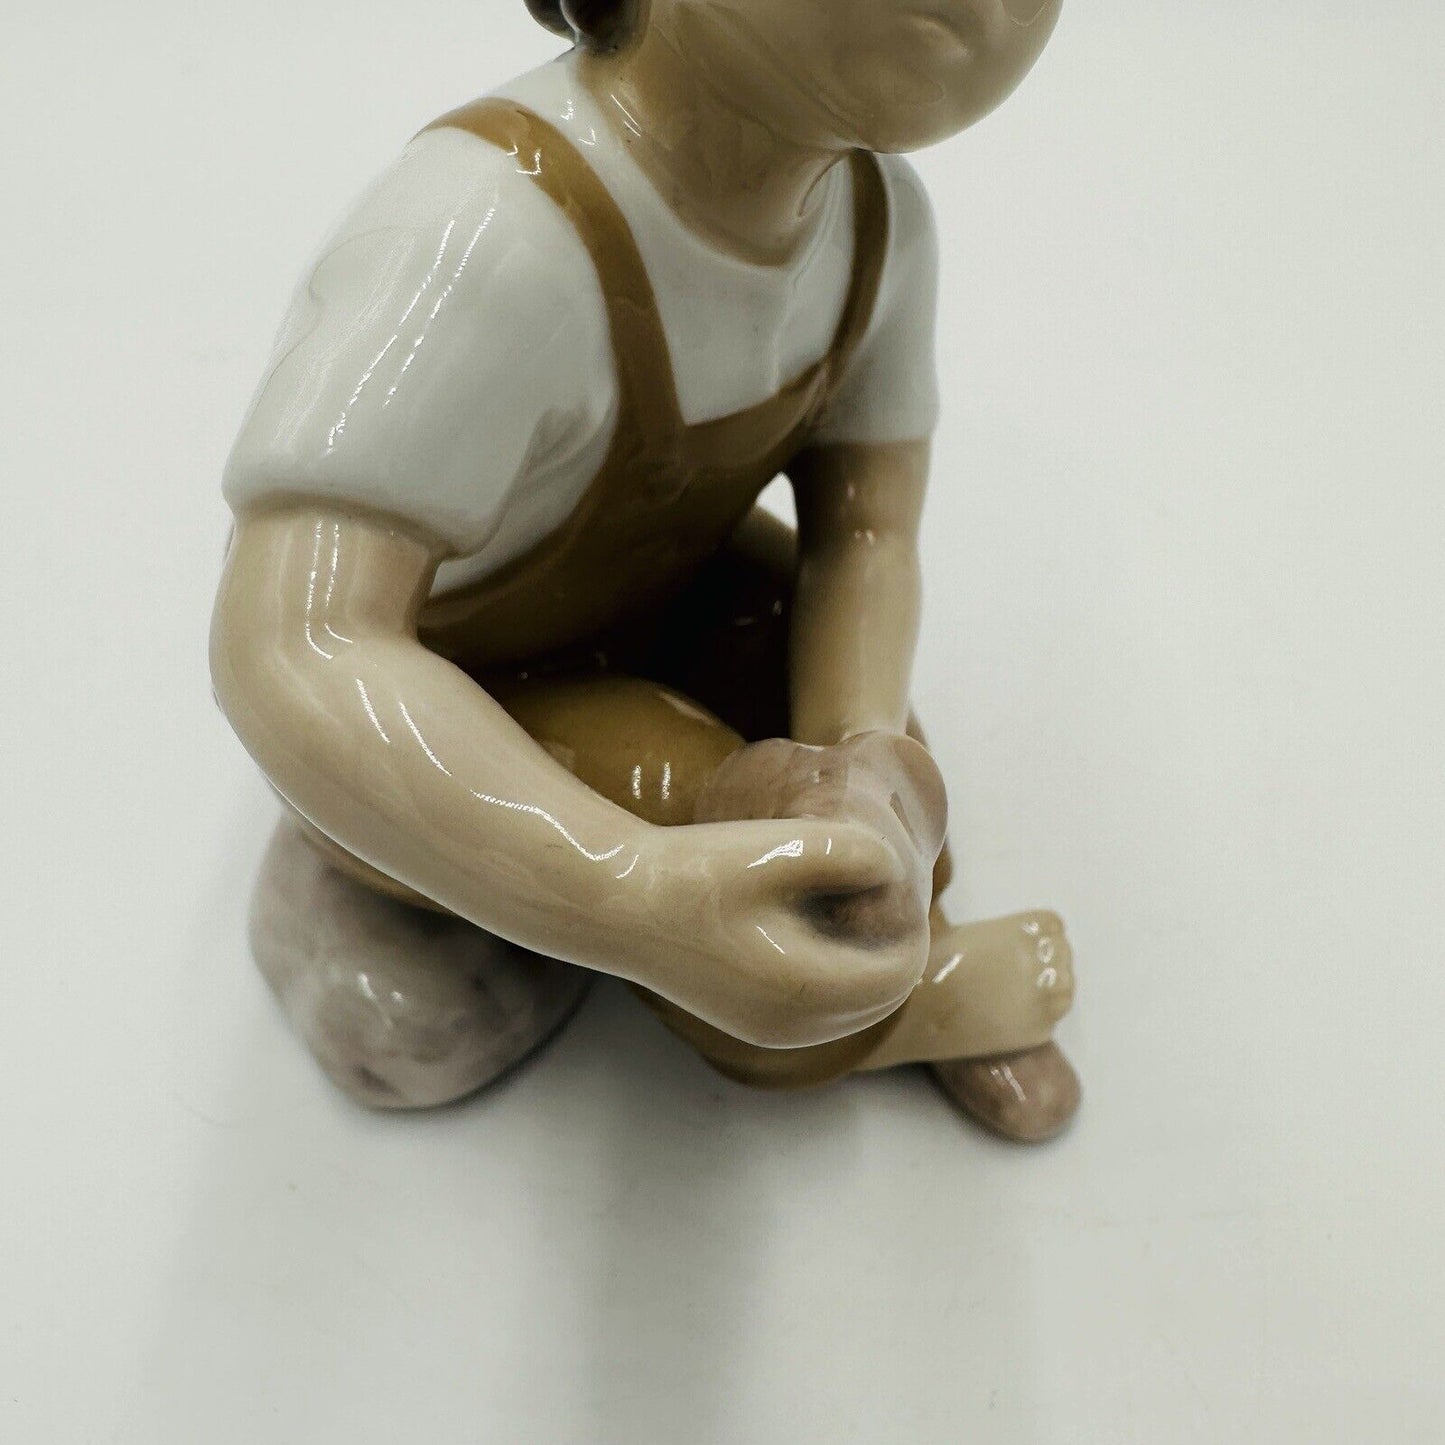 Bing & Grondahl Figurine Boy Shoe in Tan Pants Help Me Mum Denmark Vintage 2275